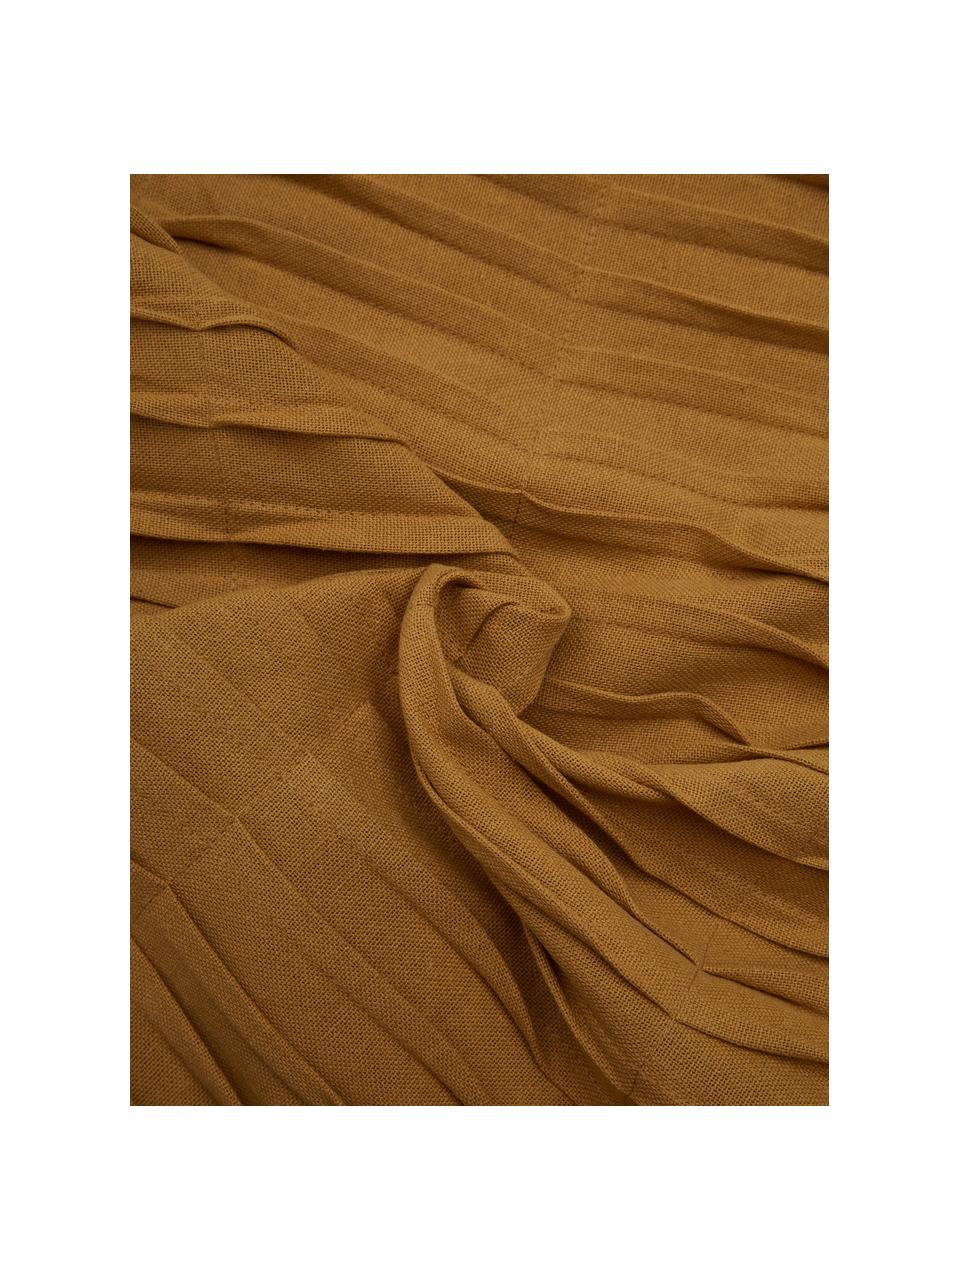 Baumwollkissen Pleated mit geraffter Oberfläche, mit Inlett, 100% Baumwolle, Ockerbraun, B 45 x L 45 cm